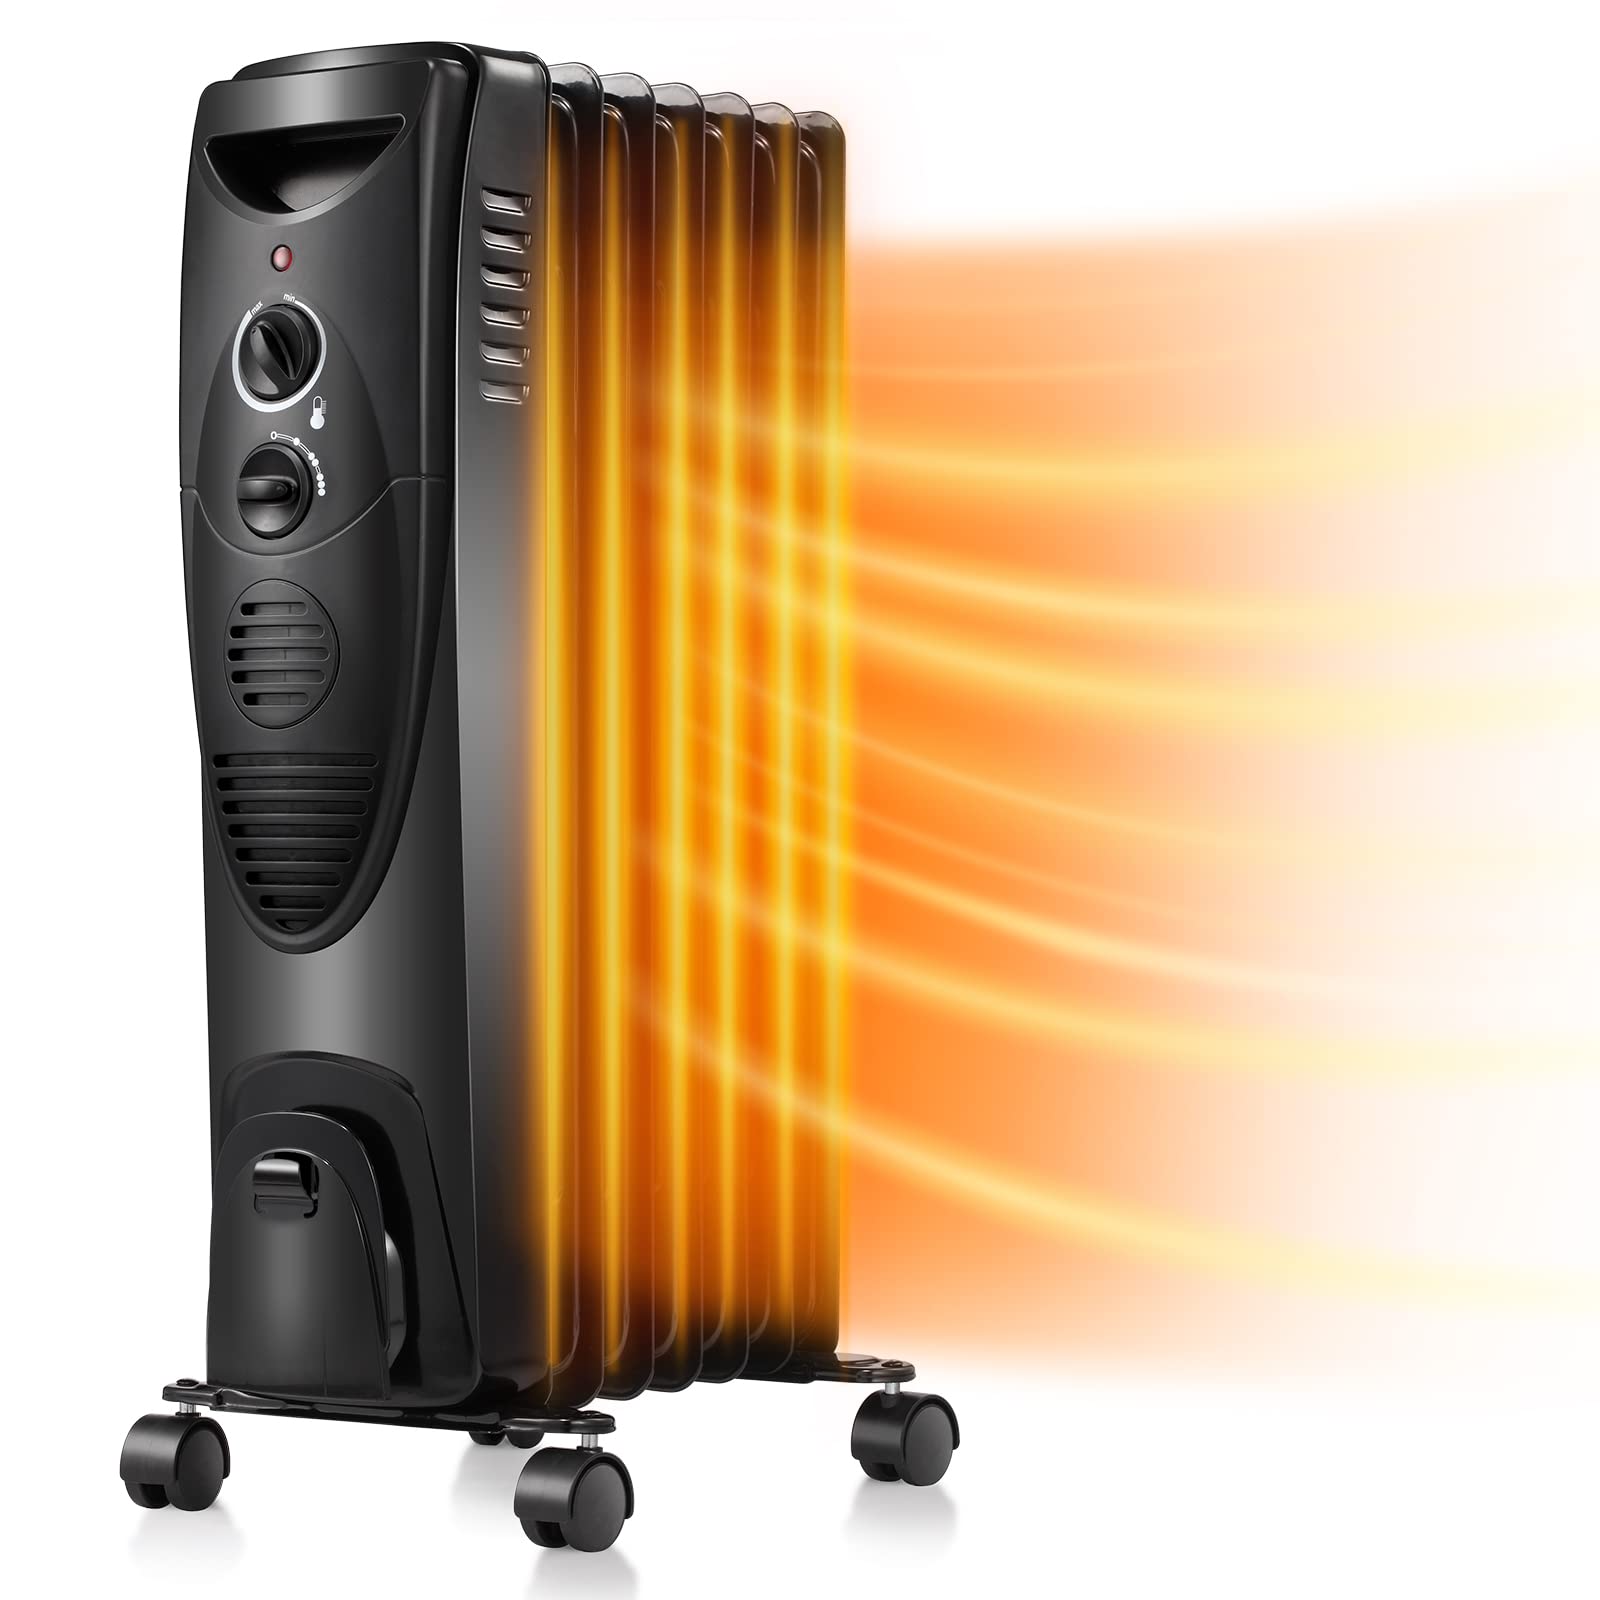 Kismile 充油散热器，静音 1500W，带指示灯的加热器，3 种加热设置，便携式安全功能